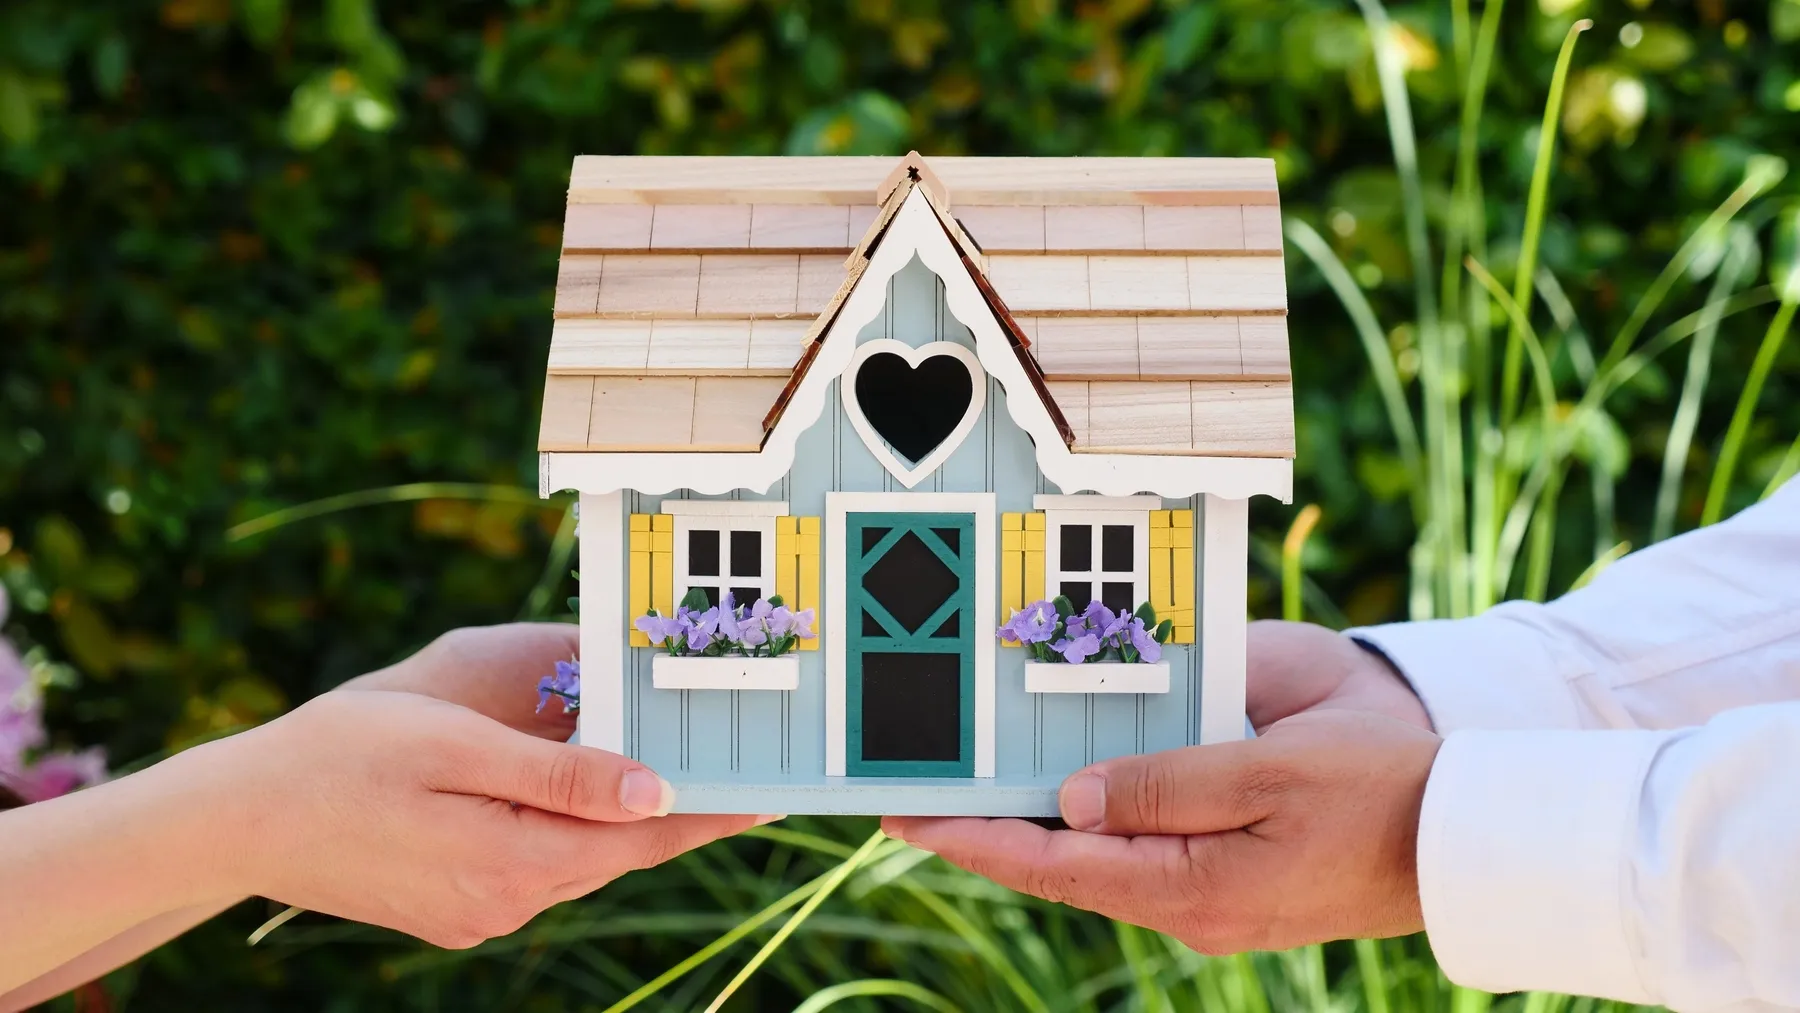 Hoeveel is uw huis waard: de verkoopprijs van uw woning bepalen via de objectieve waardebepaling van Landbergh